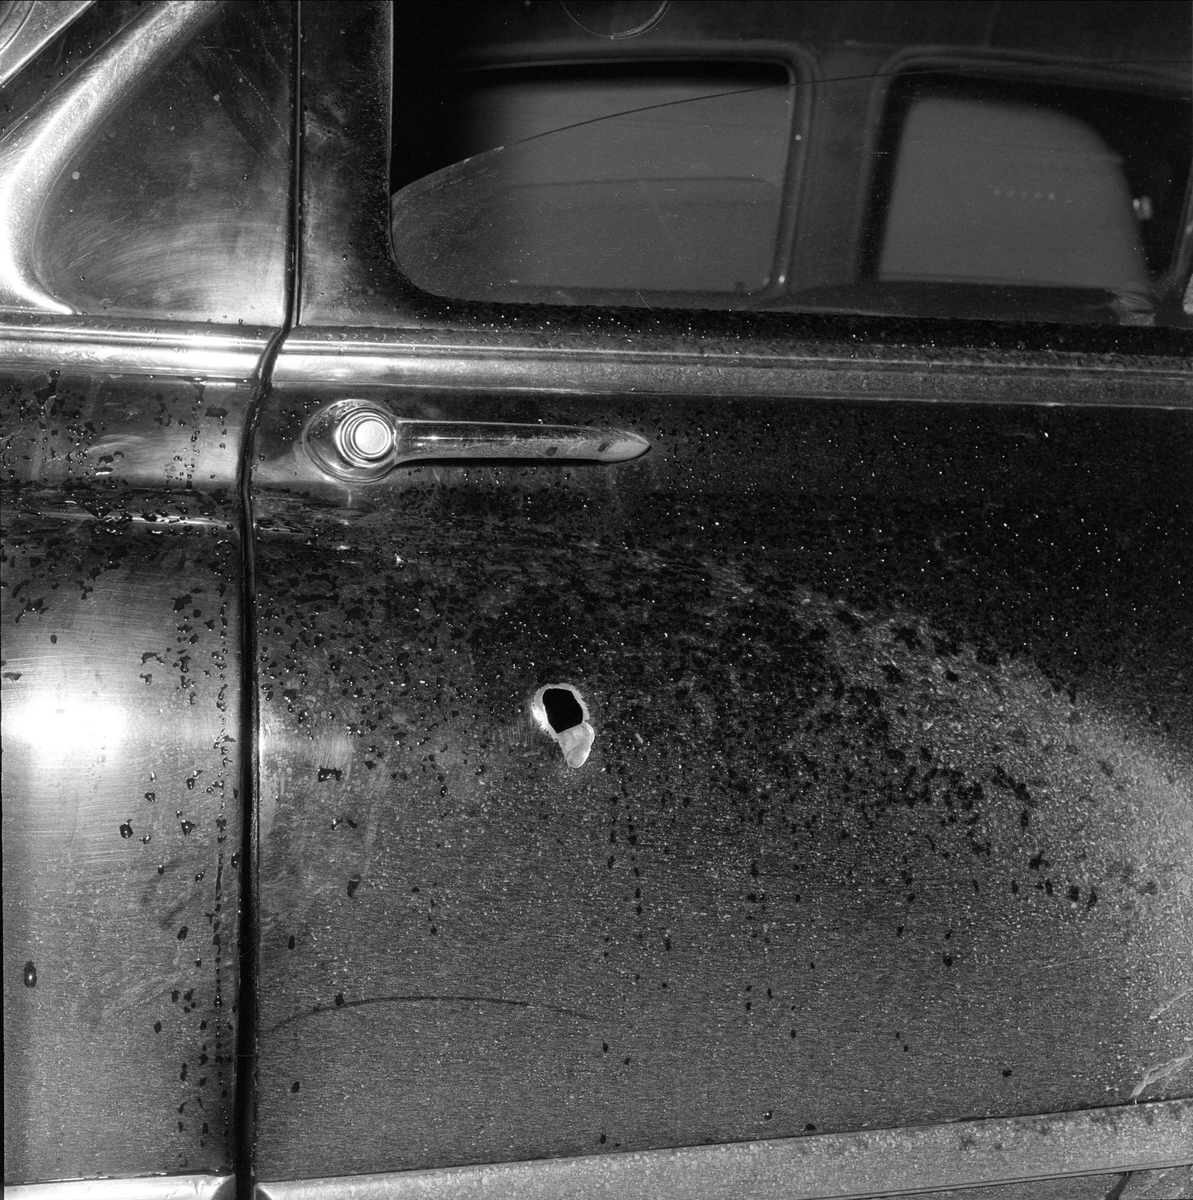 Politibil med skuddhull i bildør, Oslo, november, 1958.